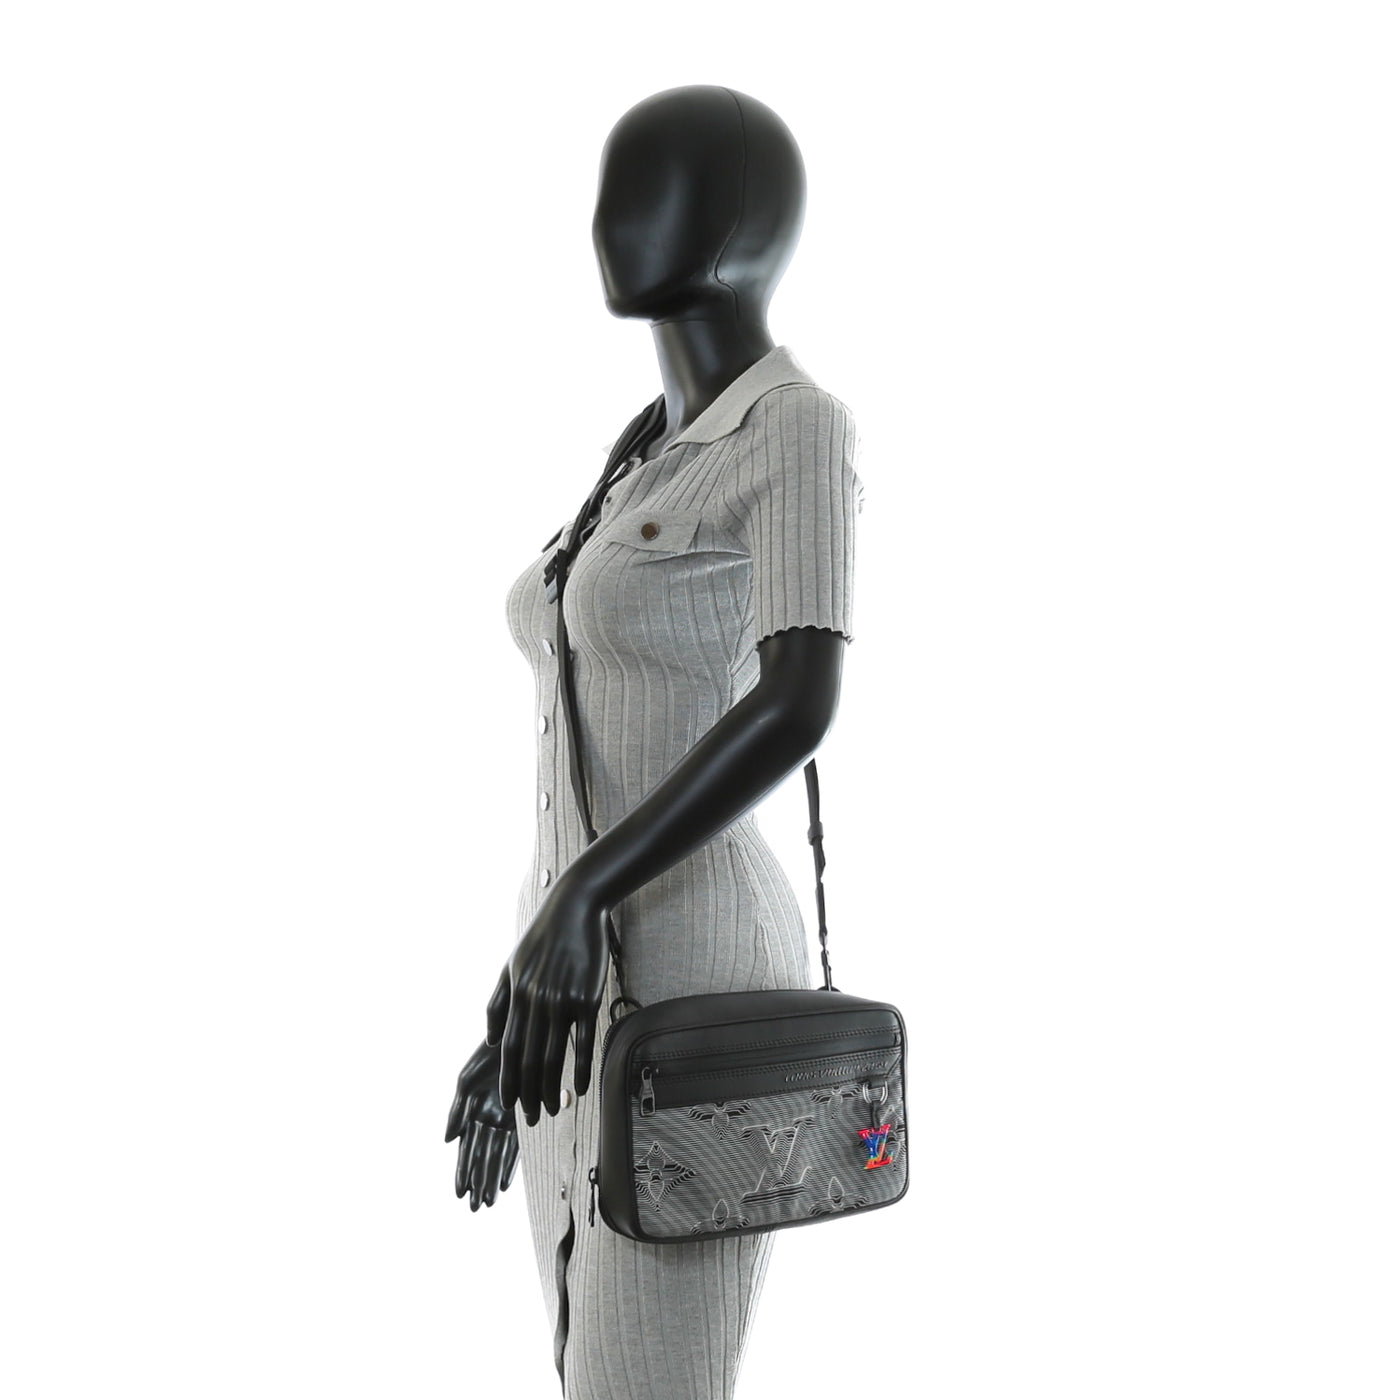 Louis Vuitton Expandable Messenger Bag 2054 collection, Grailed